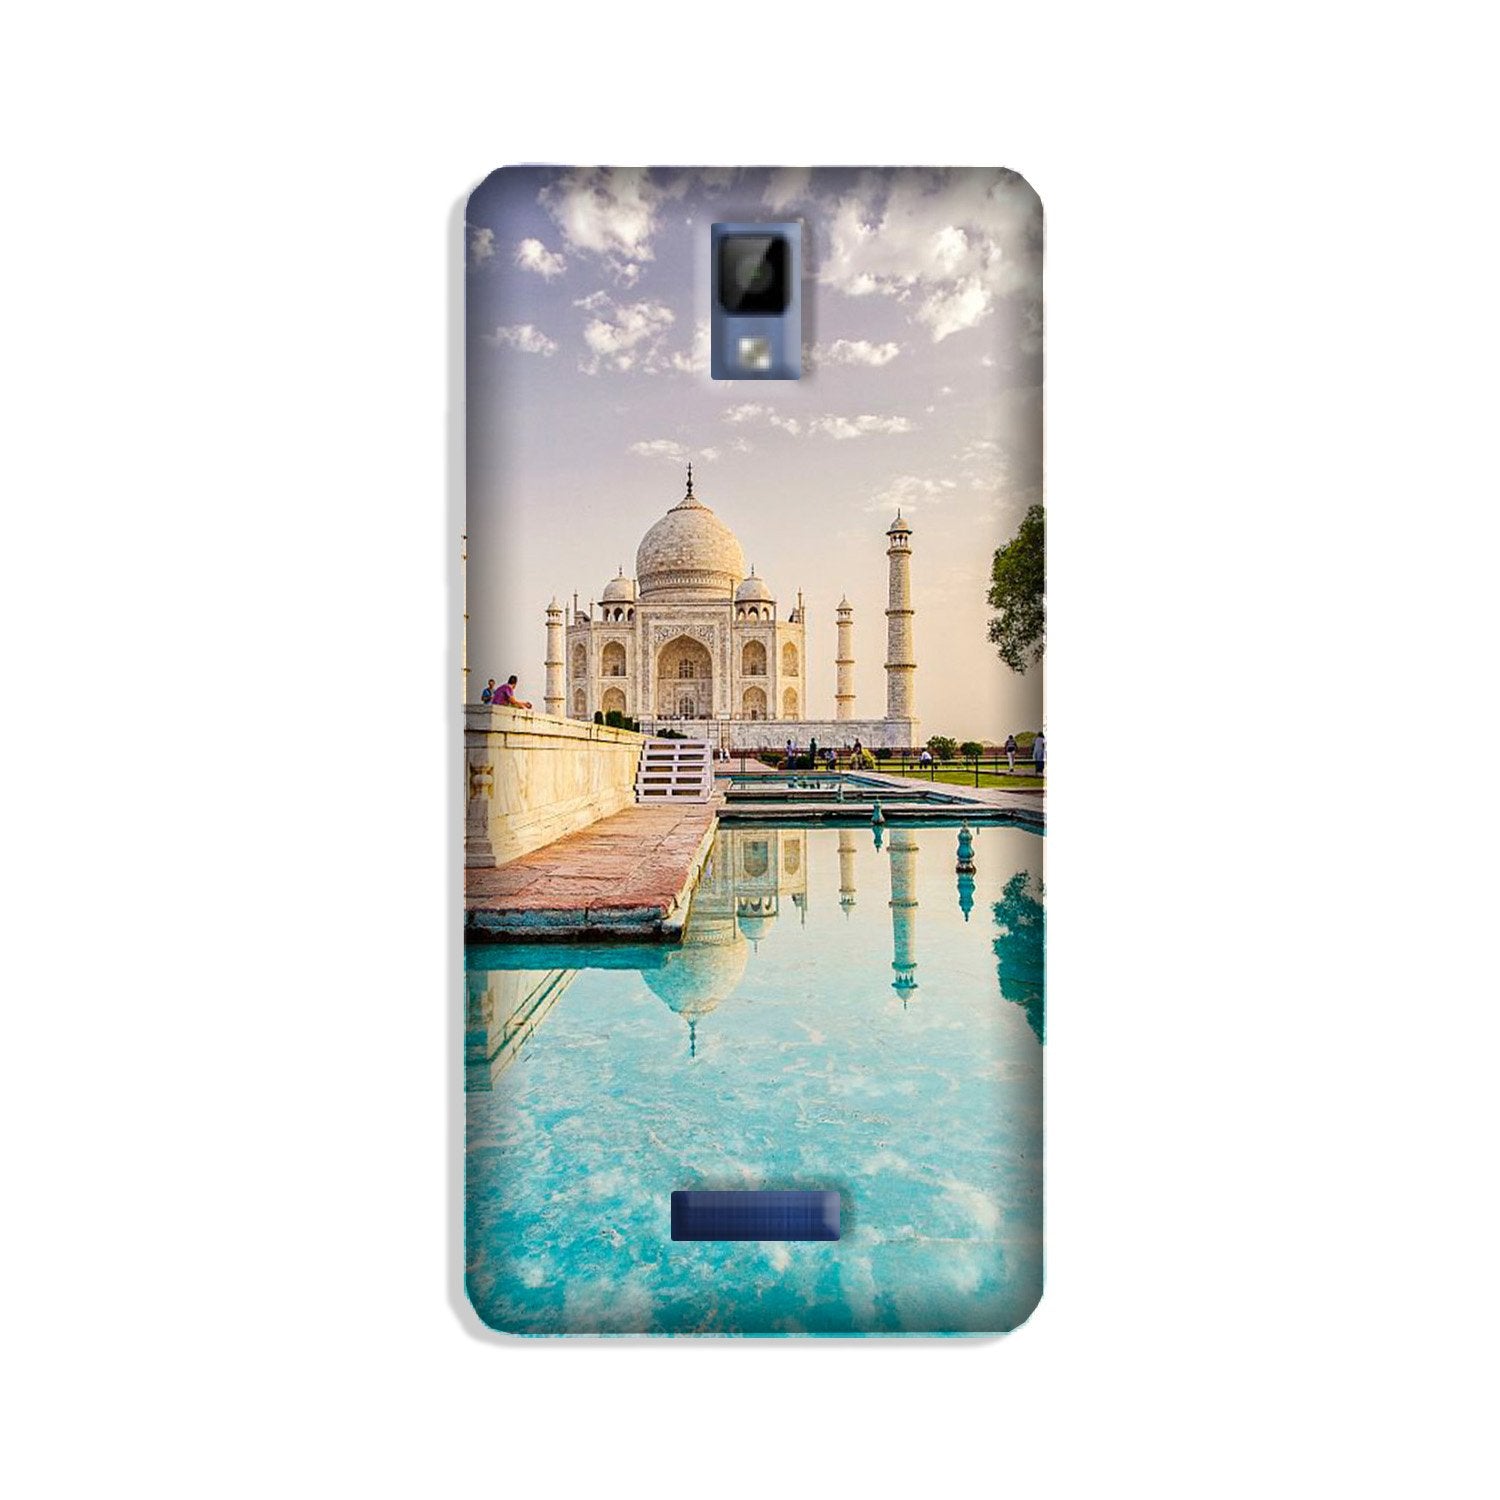 Taj Mahal Case for Gionee P7 (Design No. 297)